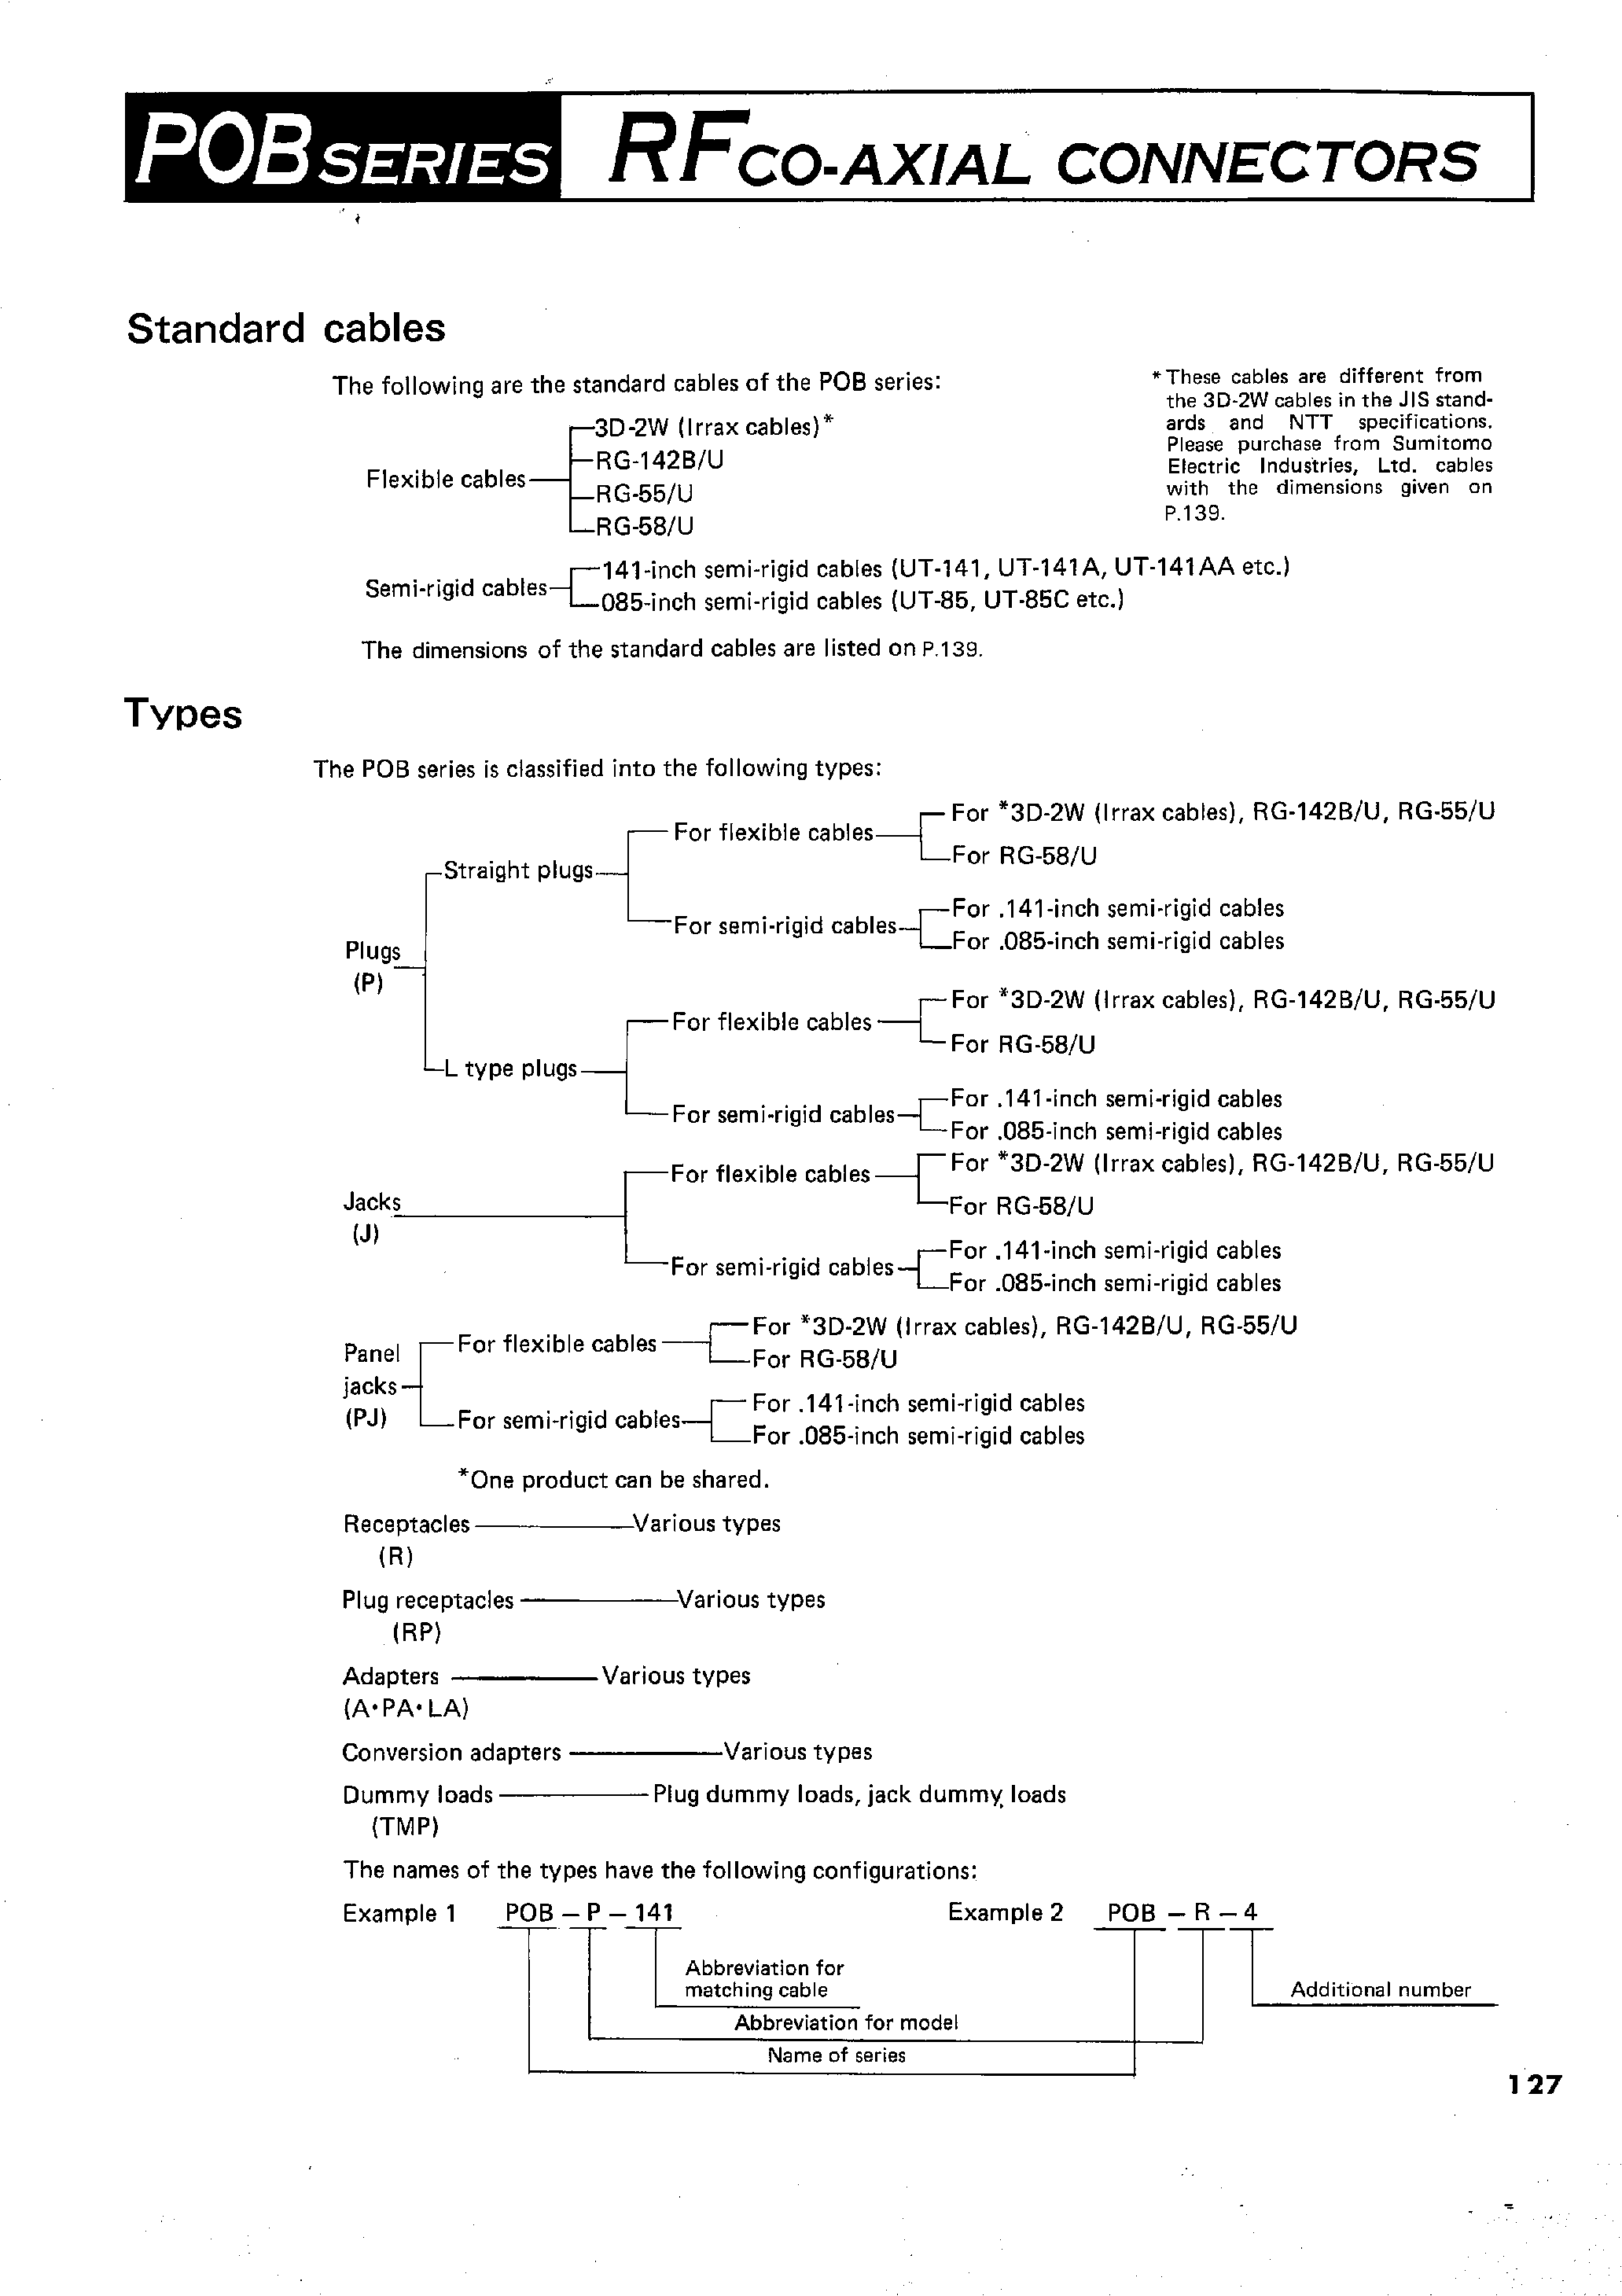 Datasheet POB-P-85 - RFCO-AXIAL CONNECTORS page 2